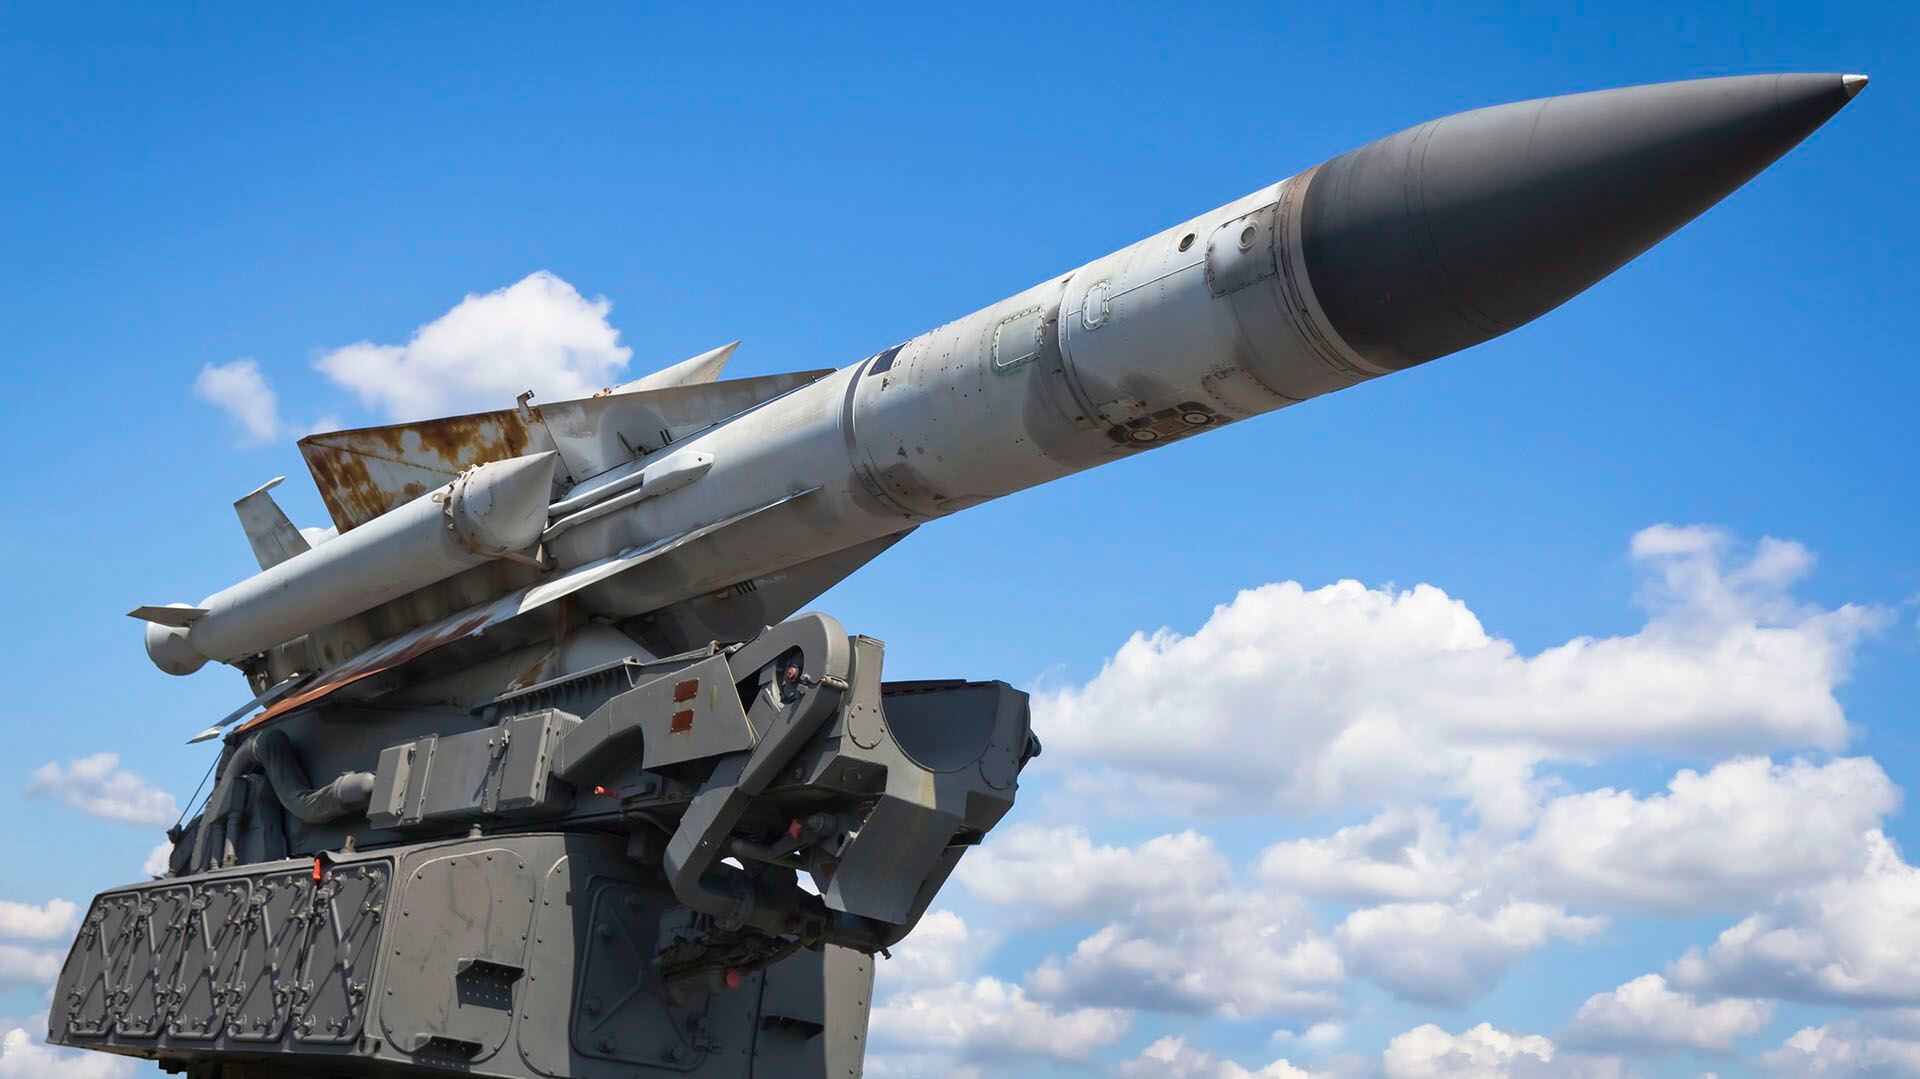 El Ministerio de Defensa declaró más tarde que dos misiles antiaéreos S-200 reconvertidos habían sido derribados sobre Crimea
(Getty Images)